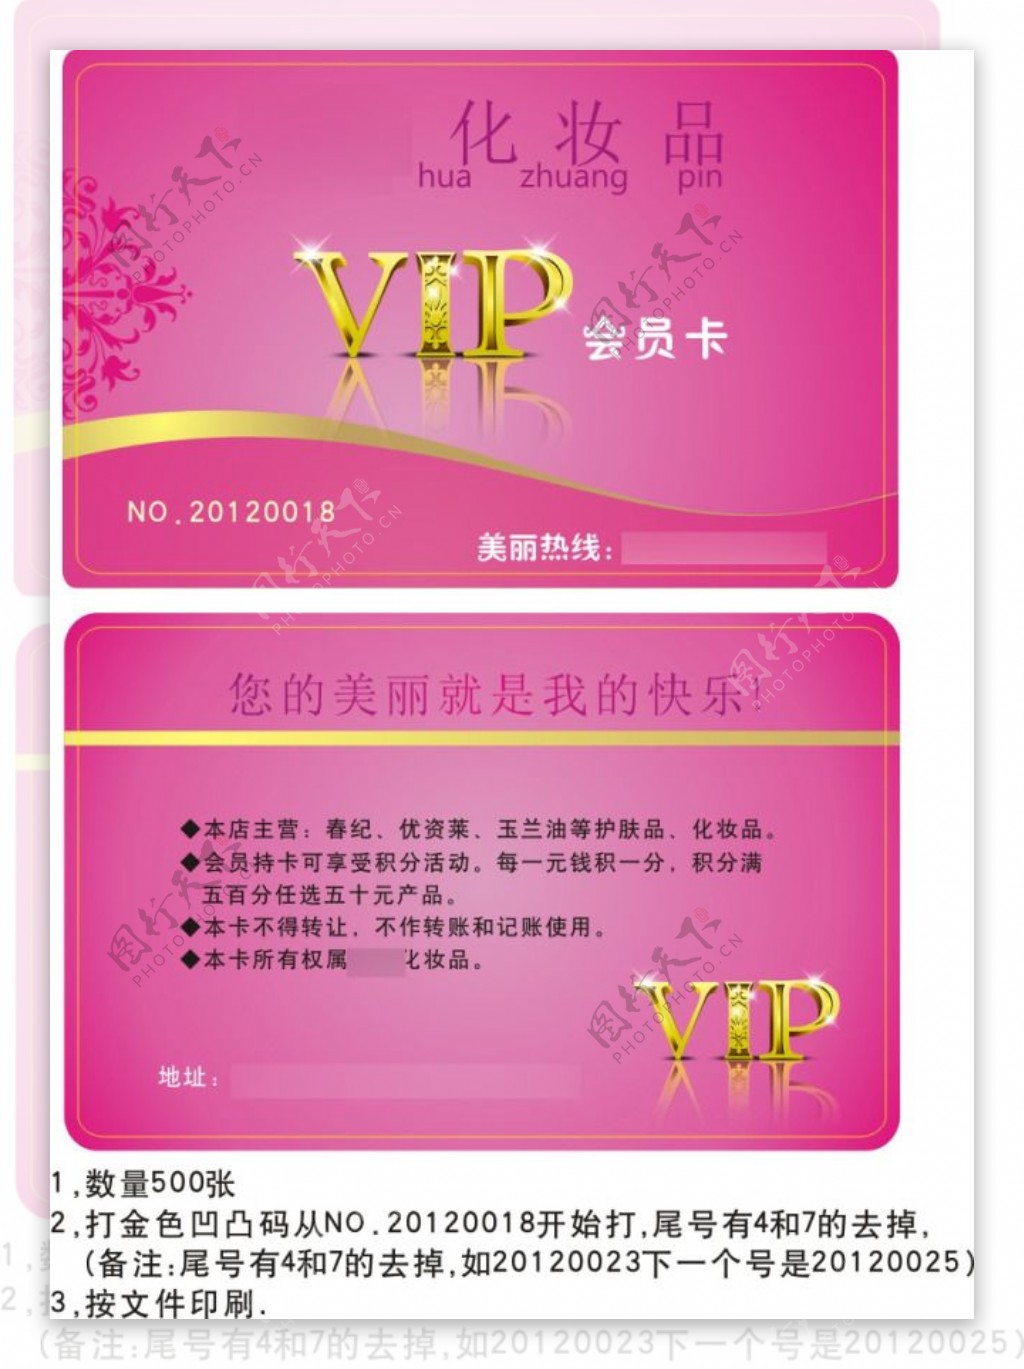 美容化妆品VIP贵宾卡会员卡设计CDR